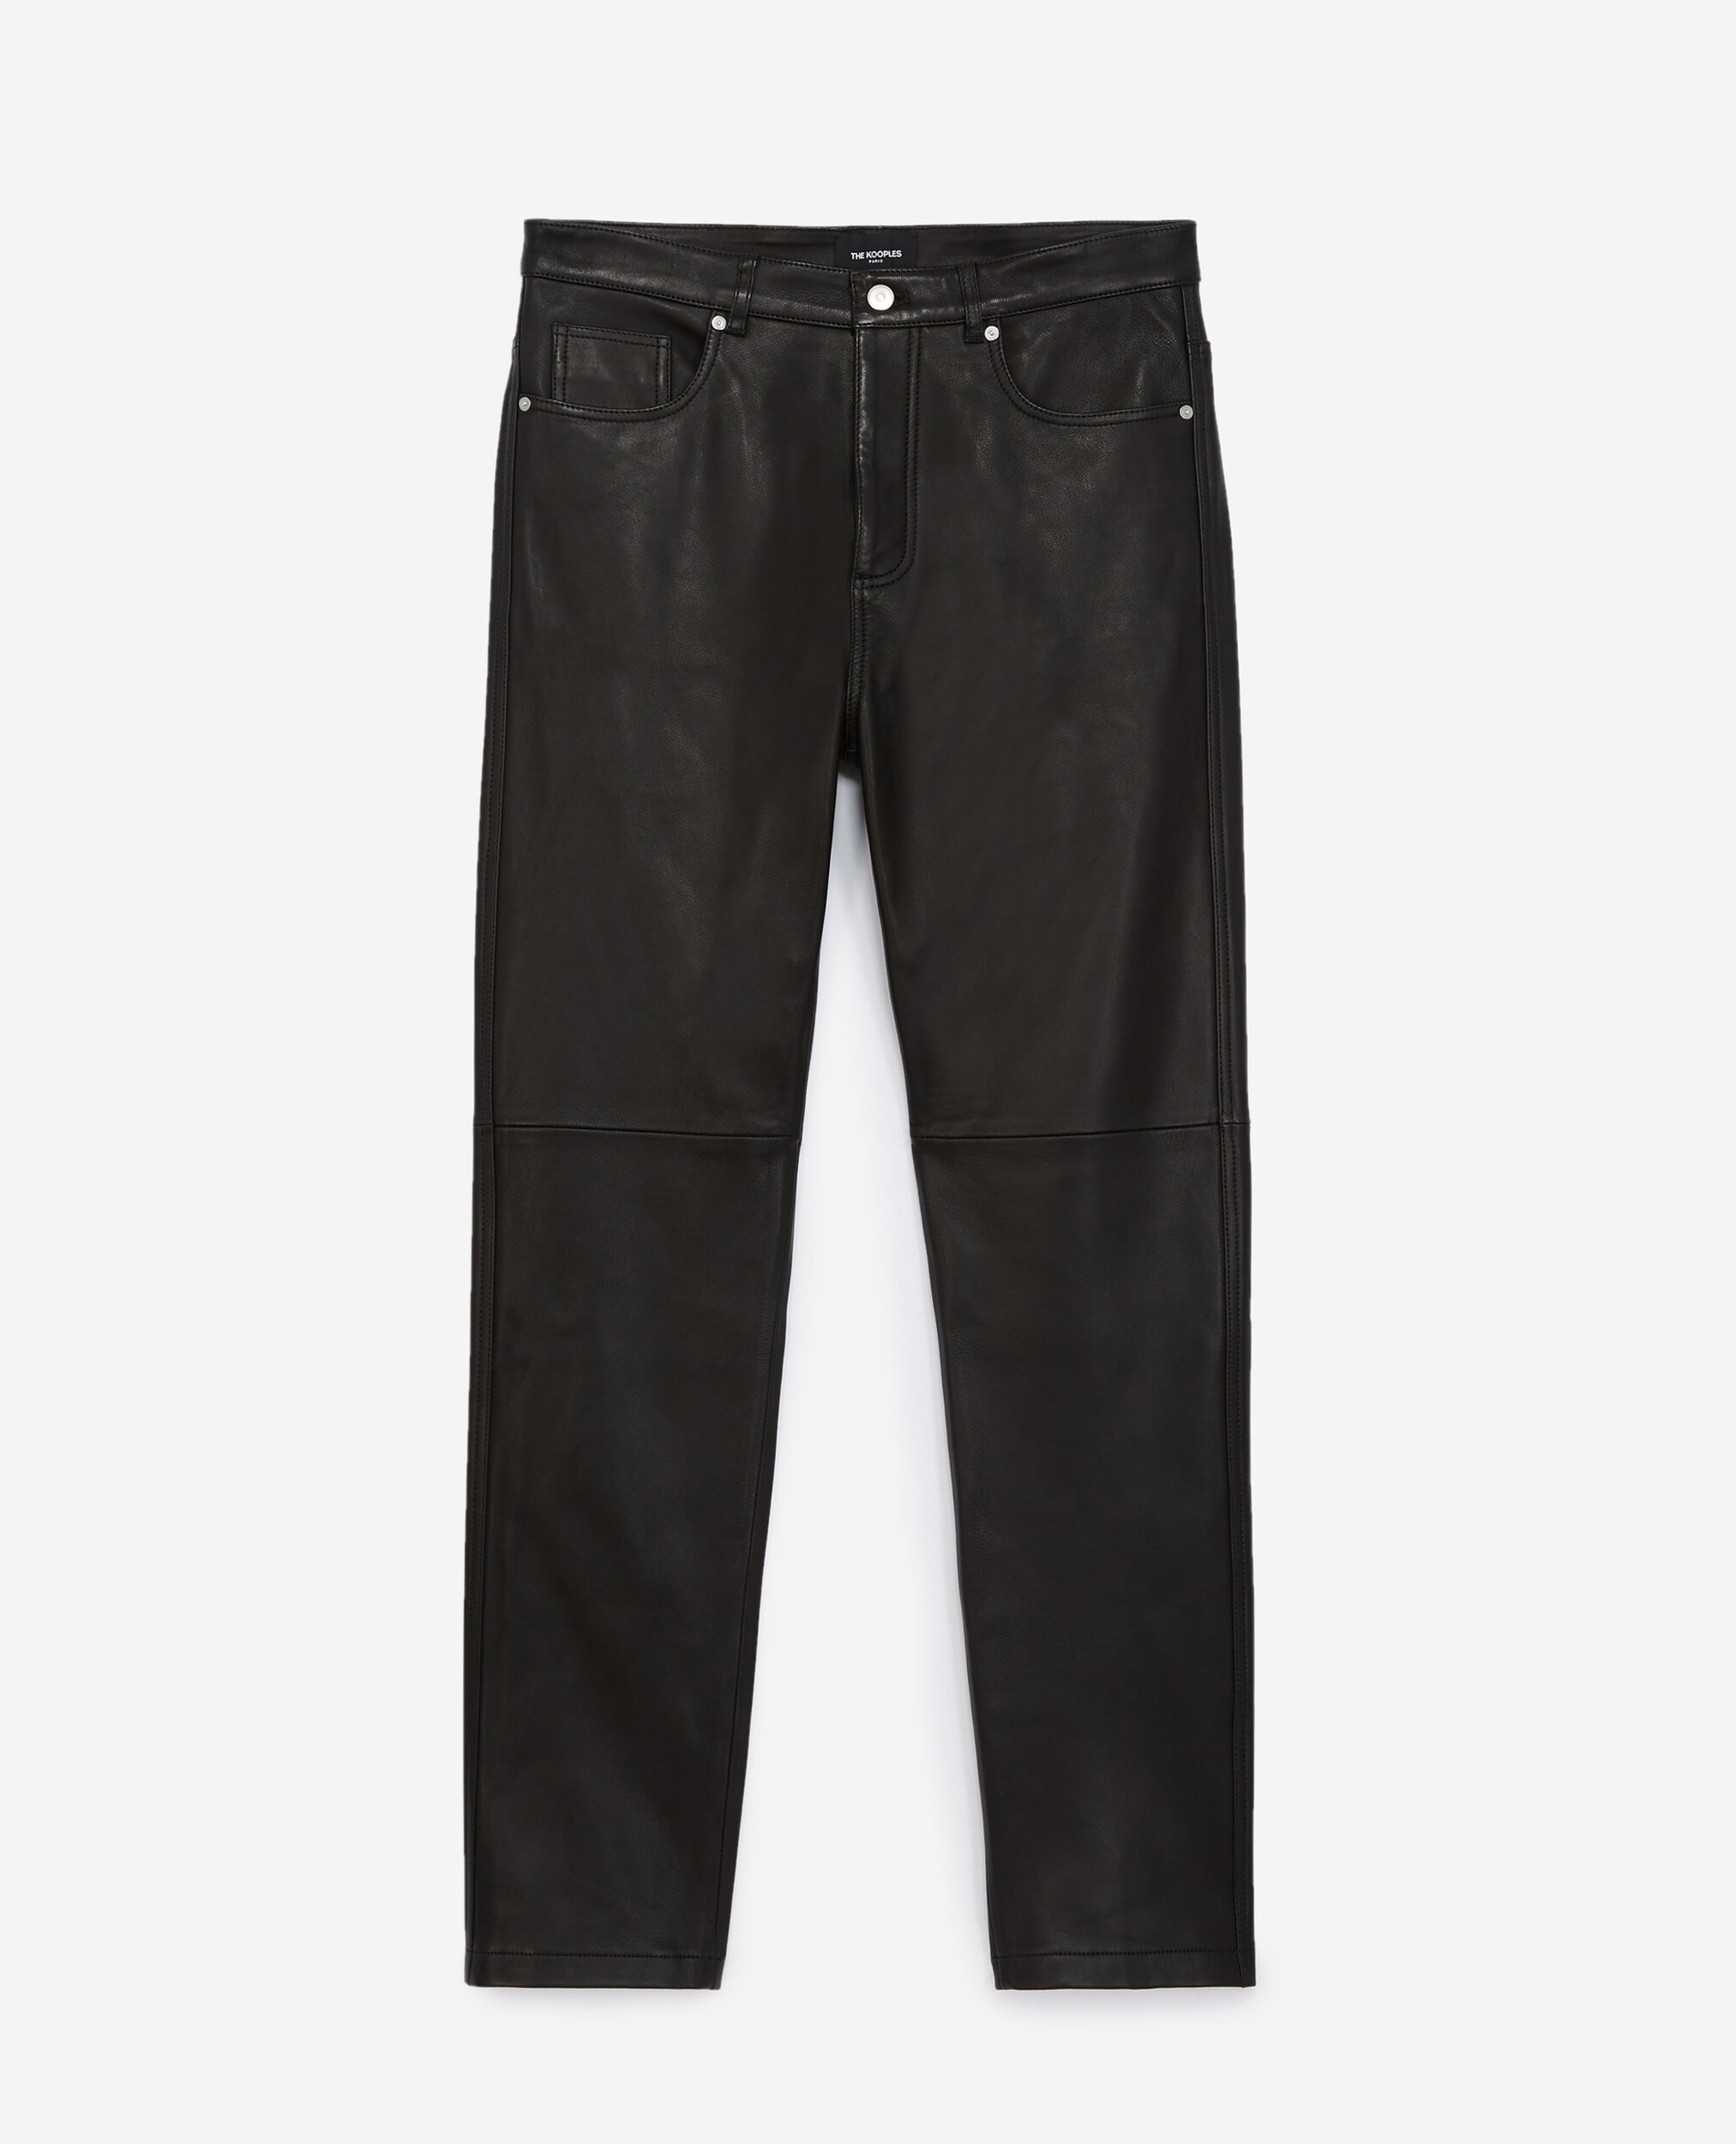 Pantalon droit cuir noir à poches, BLACK, hi-res image number null